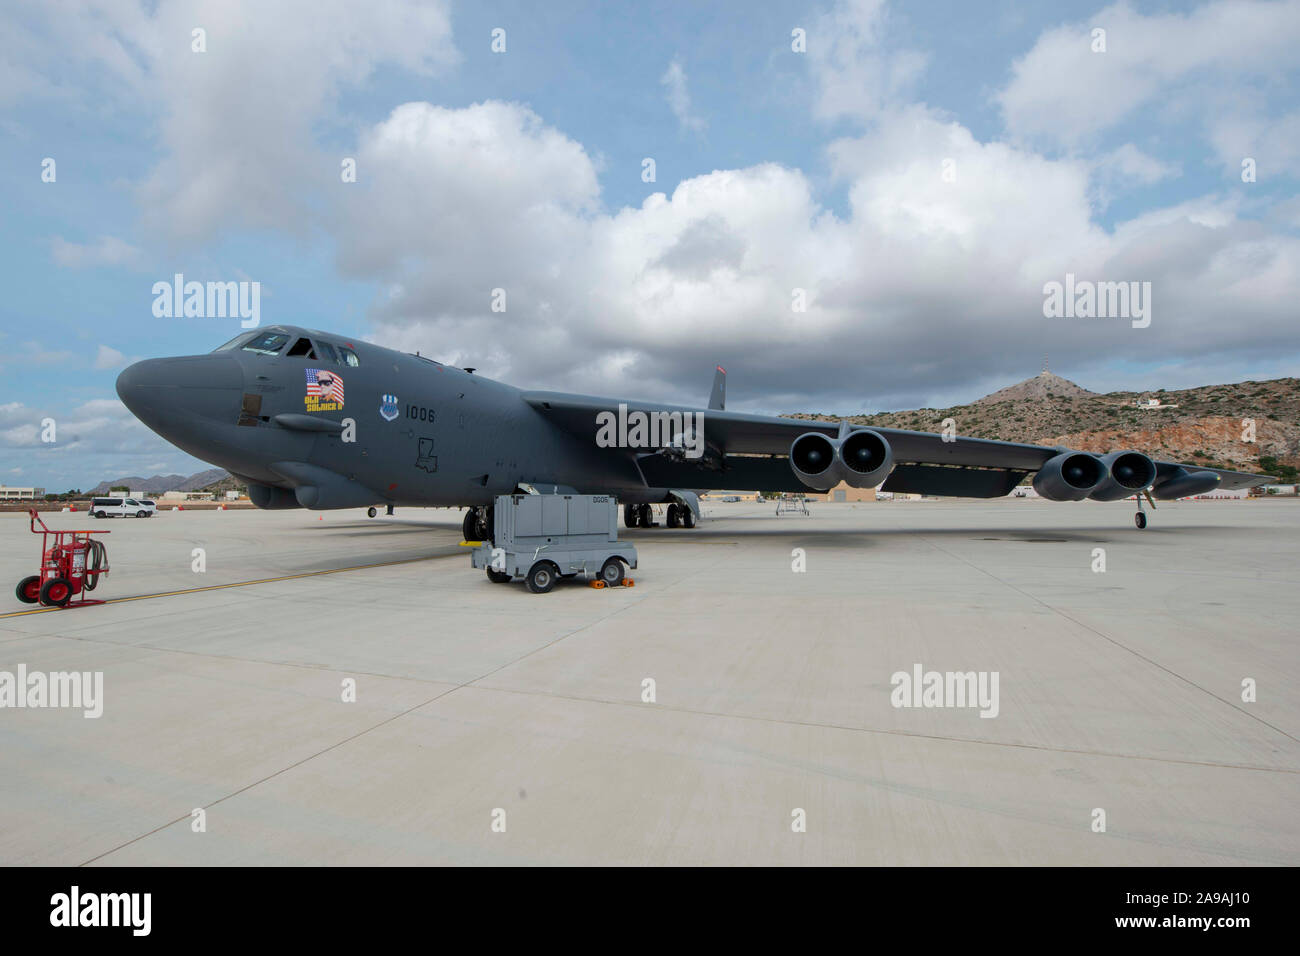 Ein US Air Force B-52 H Stratofortress Bombers, Barksdale Air Force Base in Louisiana zugewiesen wurde, werden auf dem Flugplatz bei Naval Support Activity Souda Bay, Griechenland, Nov. 2, 2019 geparkt. Die B-52, auf dem Rückflug von der Teilnahme an gemeinsamen NATO-Übungen, NSA Souda Bay aufgrund widriger Wetterbedingungen umgeleitet. Die unerwarteten Besuch markiert das erste Mal eine B-52 an die NSA Souda Bay Flugplatz gelandet. NSA Souda Bay ist ein Betrieb an Land, die USA ermöglicht, Verbündeten und Partner nation Kräfte zu sein, wo sie gebraucht werden, wenn sie erforderlich sind, um Sicherheit und Stabilität in Europa zu gewährleisten, Af Stockfoto